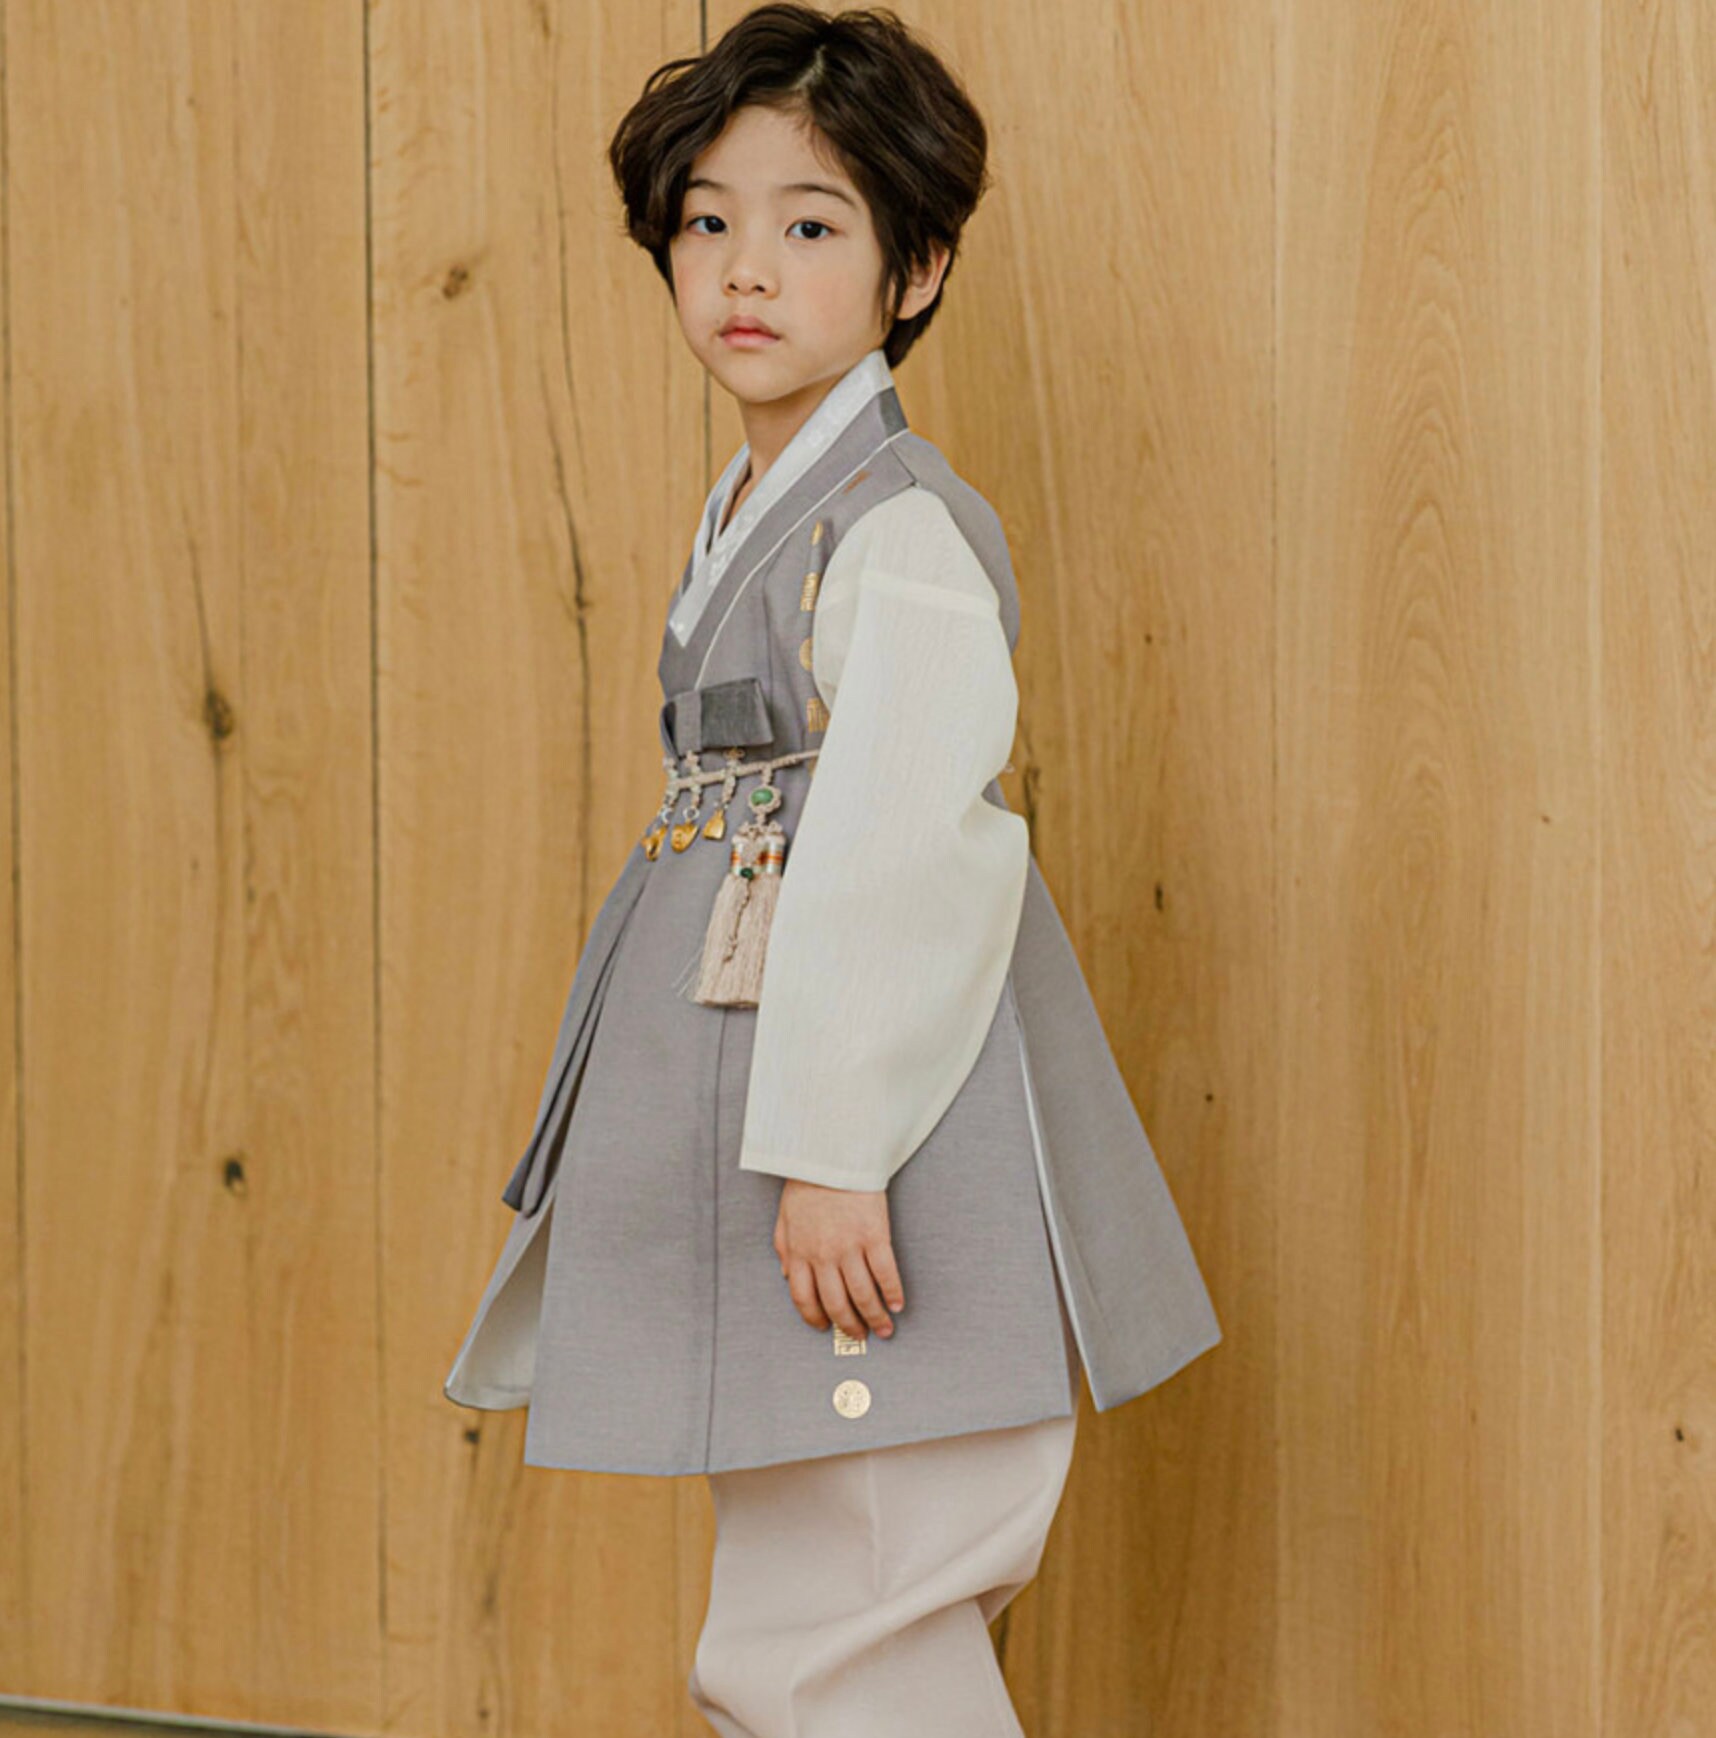  Hanbok - Gorro para niño (1 a 3 edades), color beige